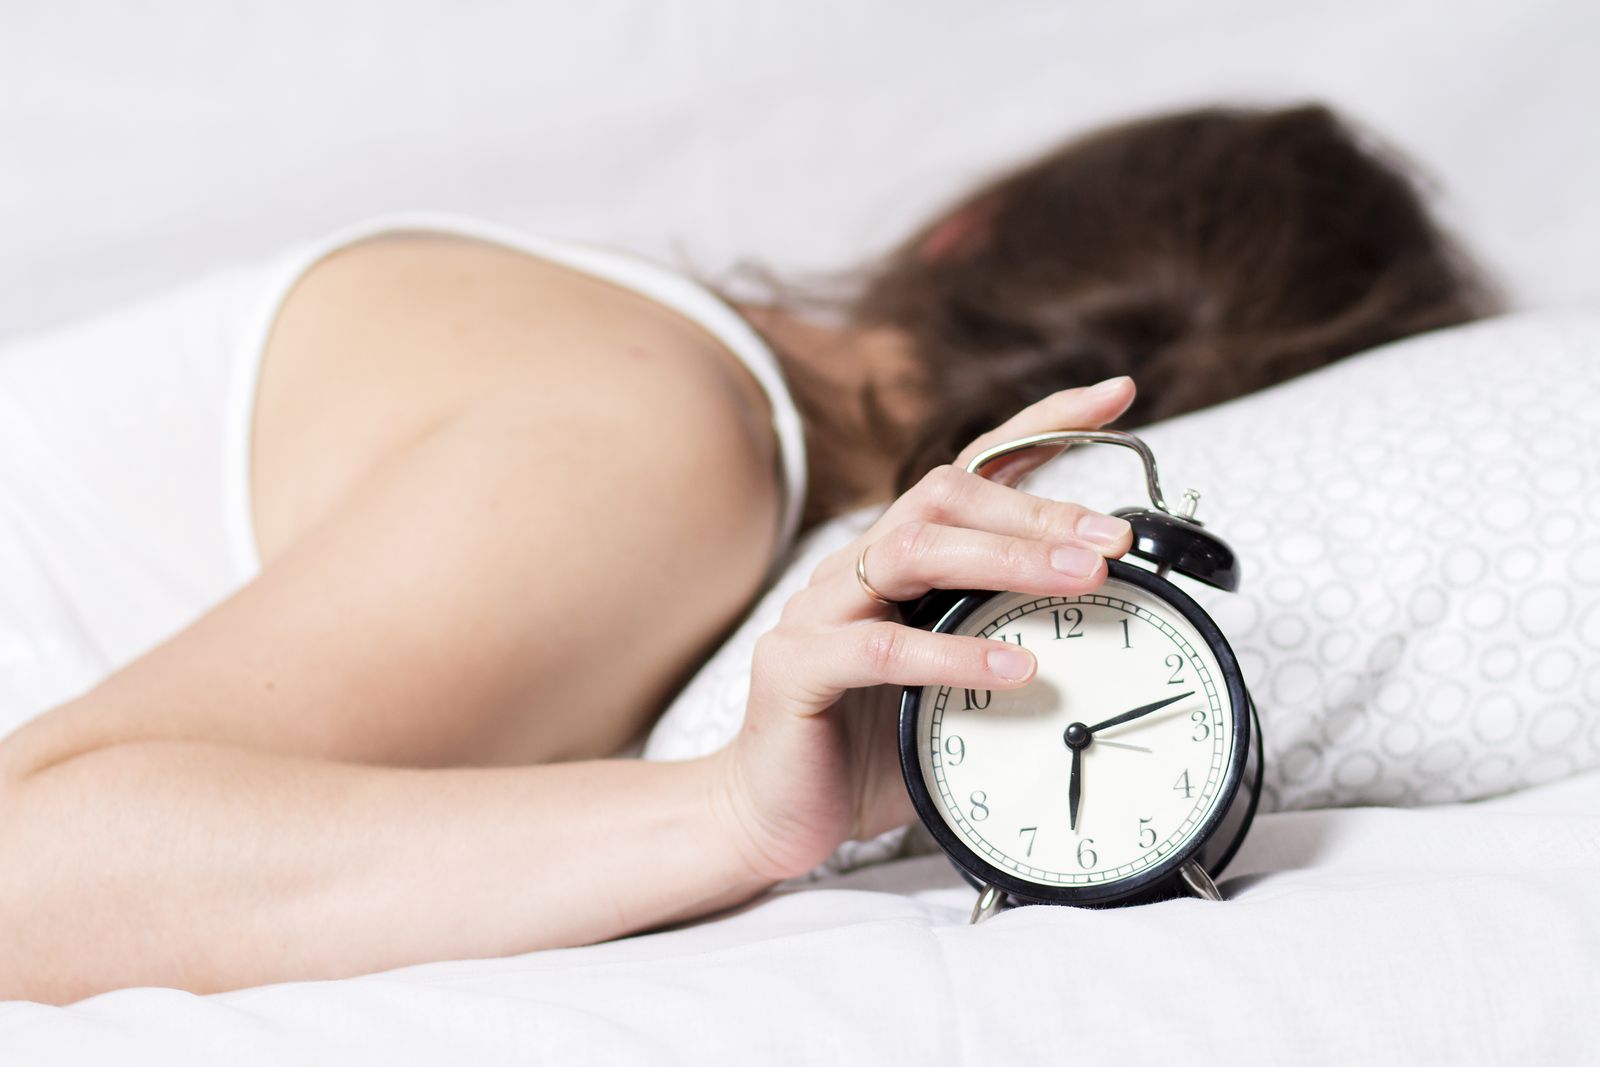 Adelantar el despertador una hora mejorará nuestra vida (bigstock)